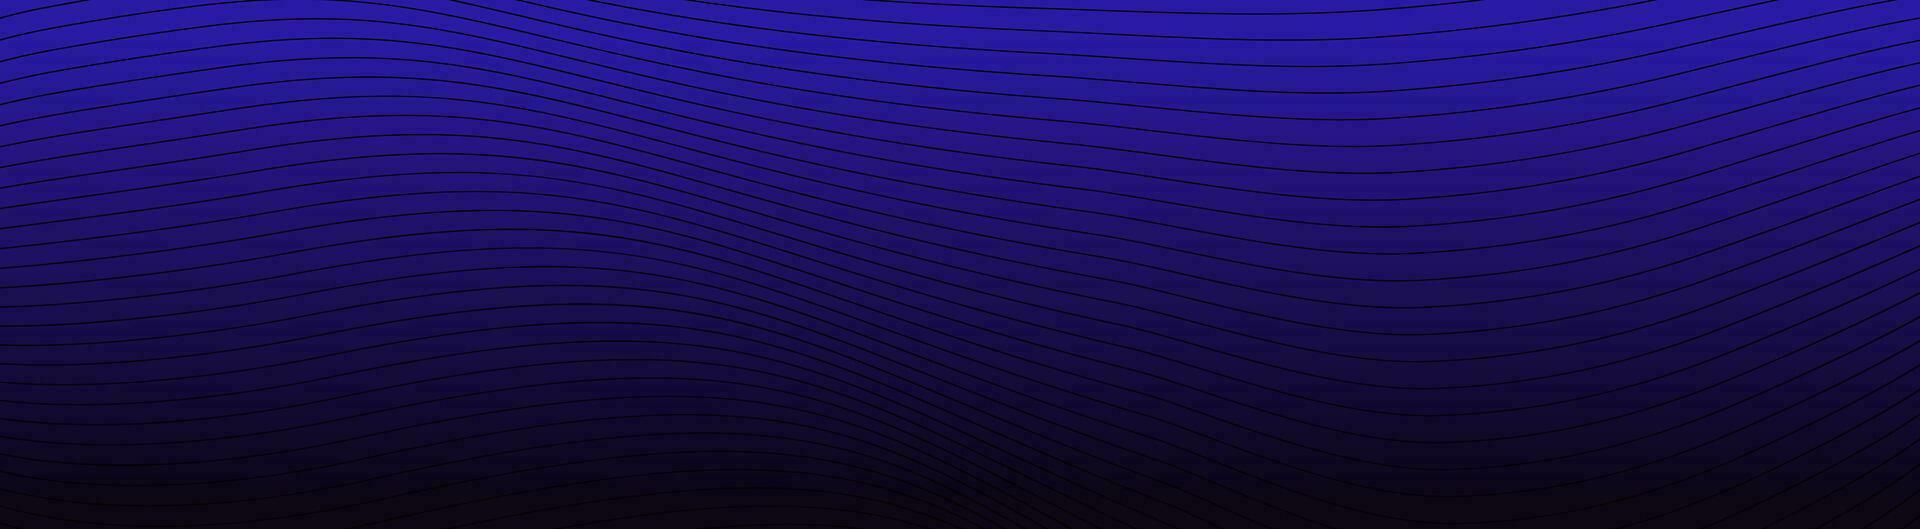 Blau abstrakt Digital Welle Hintergrund. zappeln Streifen Linien geometrisch Banner mit futuristisch Kurve Grafik Präsentation und Vektor Dekoration